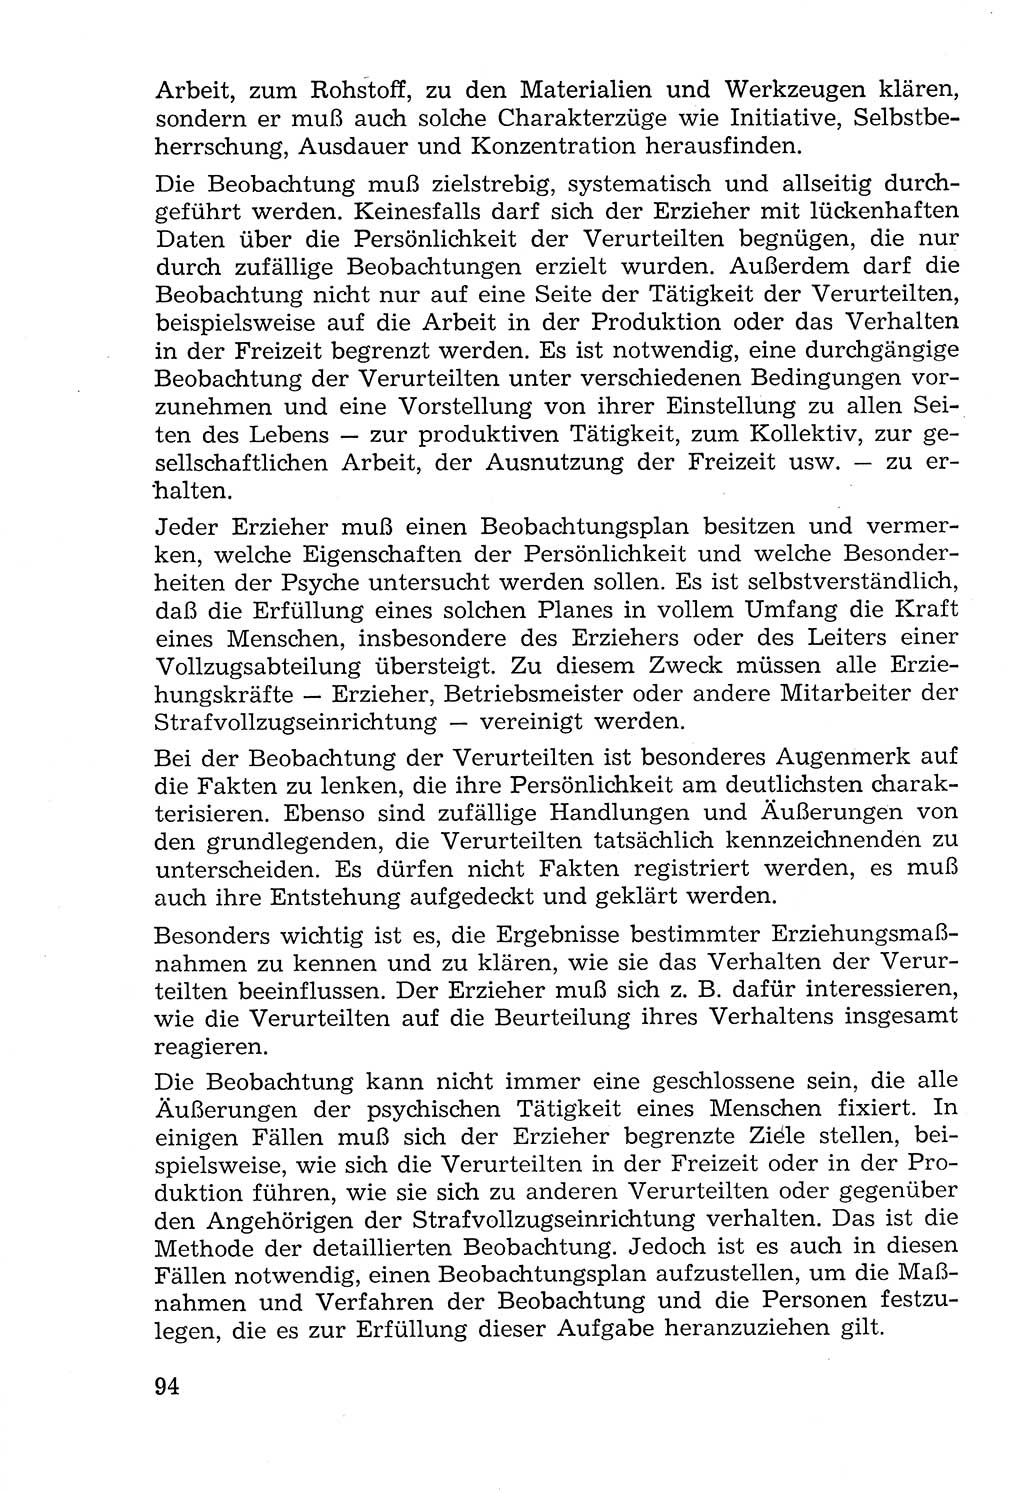 Lehrbuch der Strafvollzugspädagogik [Deutsche Demokratische Republik (DDR)] 1969, Seite 94 (Lb. SV-Pd. DDR 1969, S. 94)